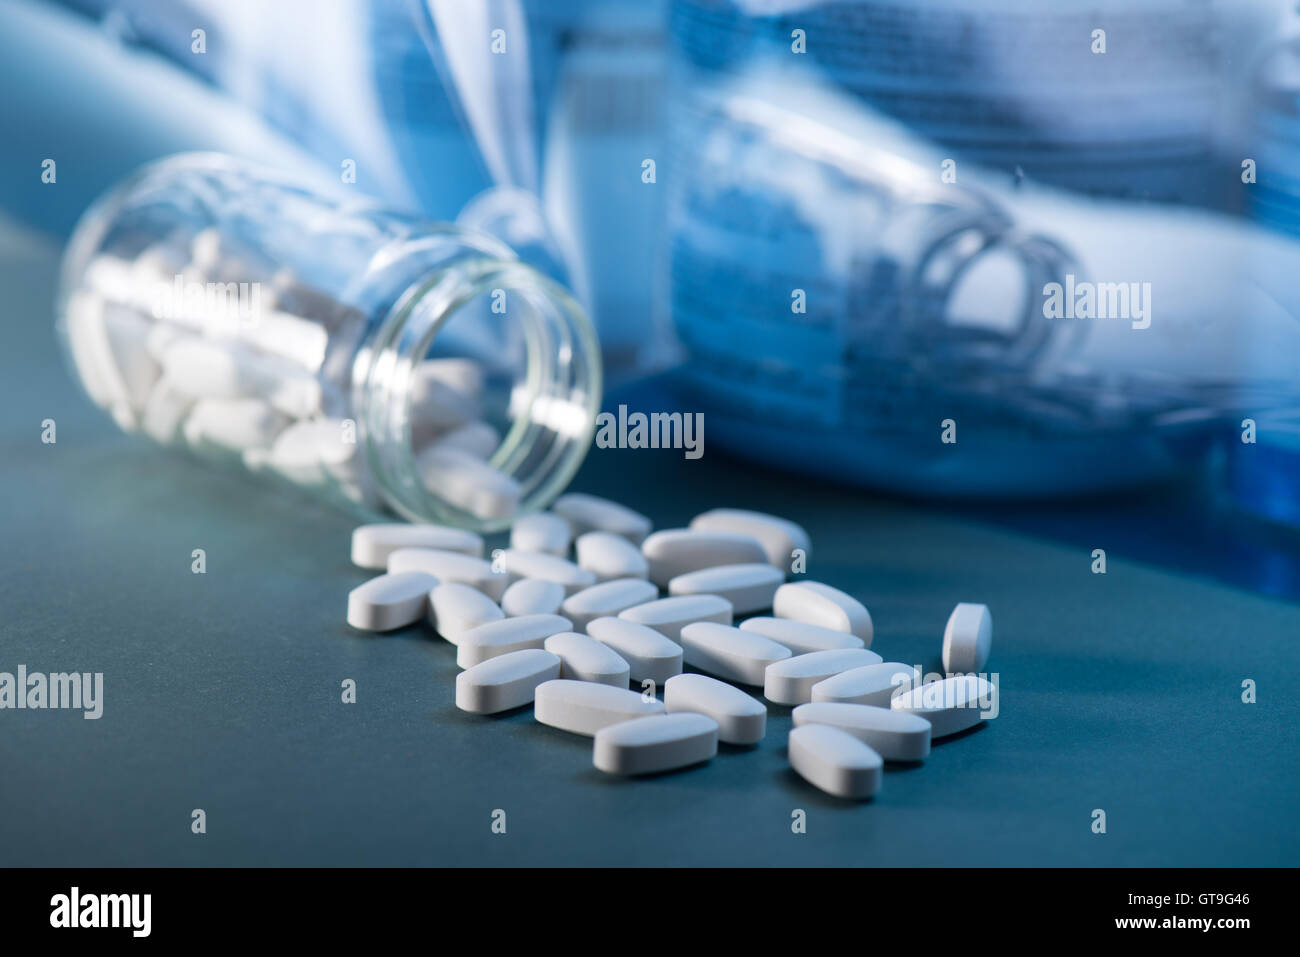 Droge, Medizin oder Ergänzung Pillen auf Tabelle mit Farbeffekten. Gesundheit Konzept. medizinischen Hintergrund. Stockfoto